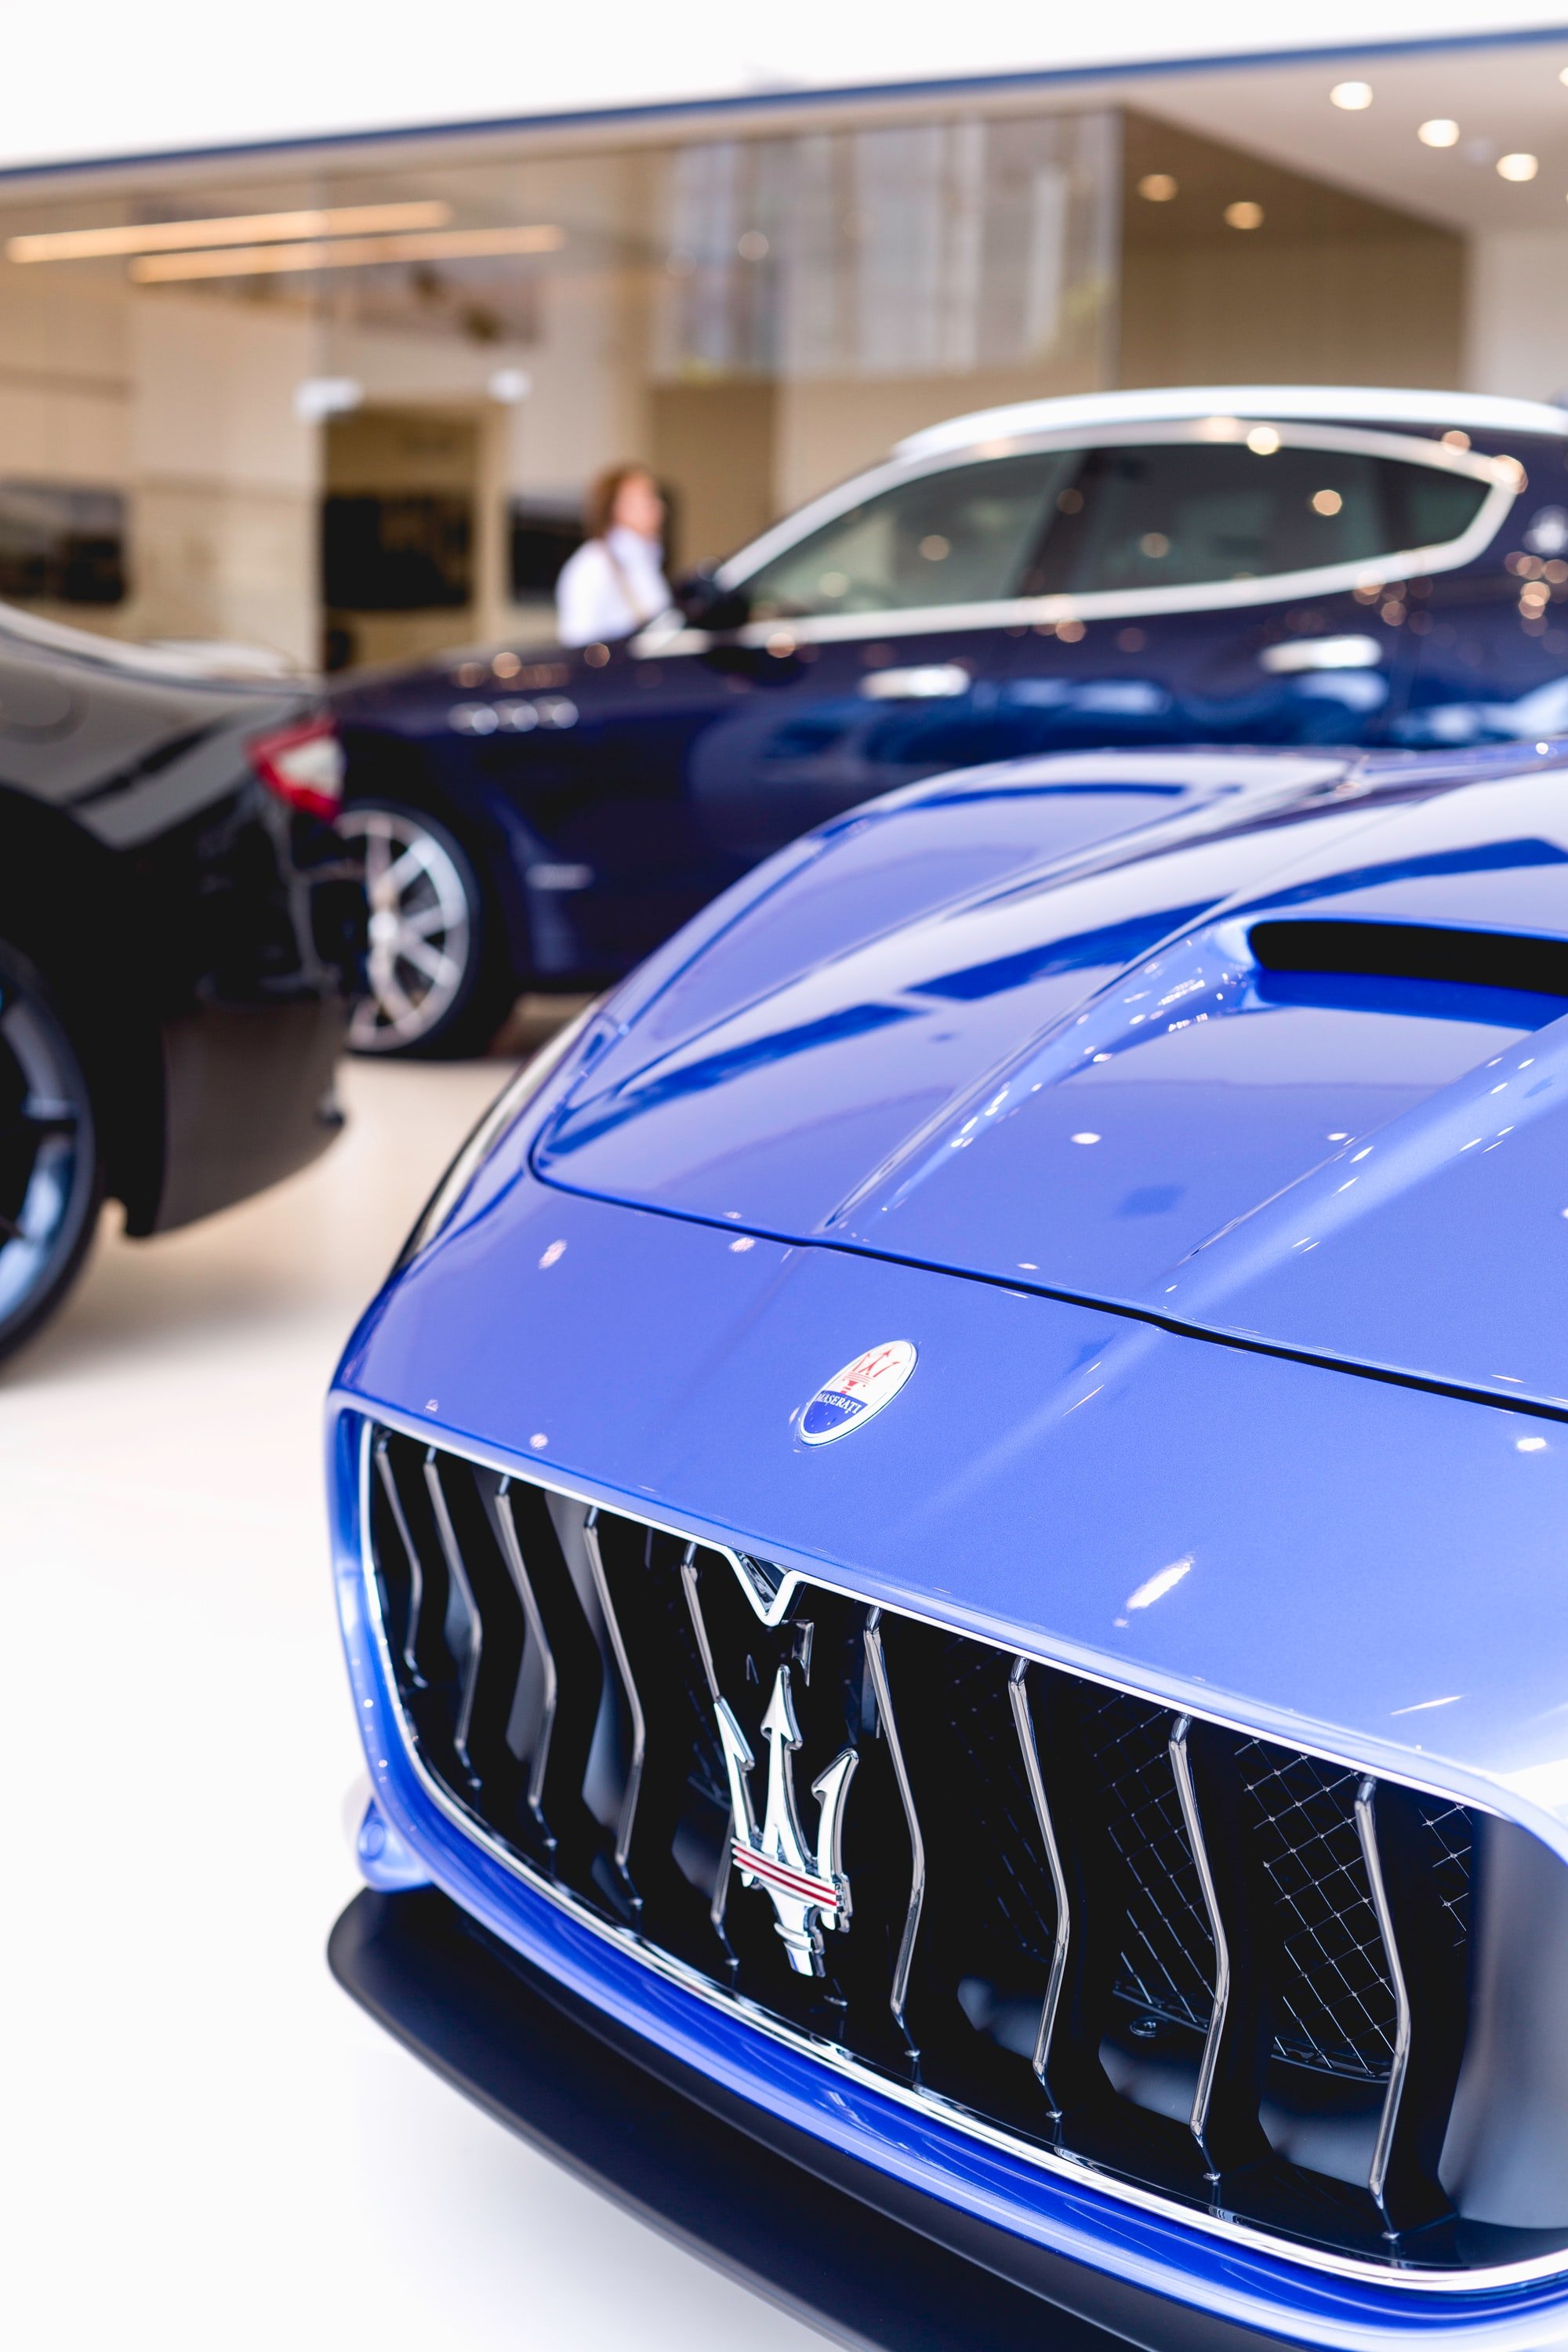 Alex bekam einen Anruf vom Maserati-Händler. | Quelle: Unsplash